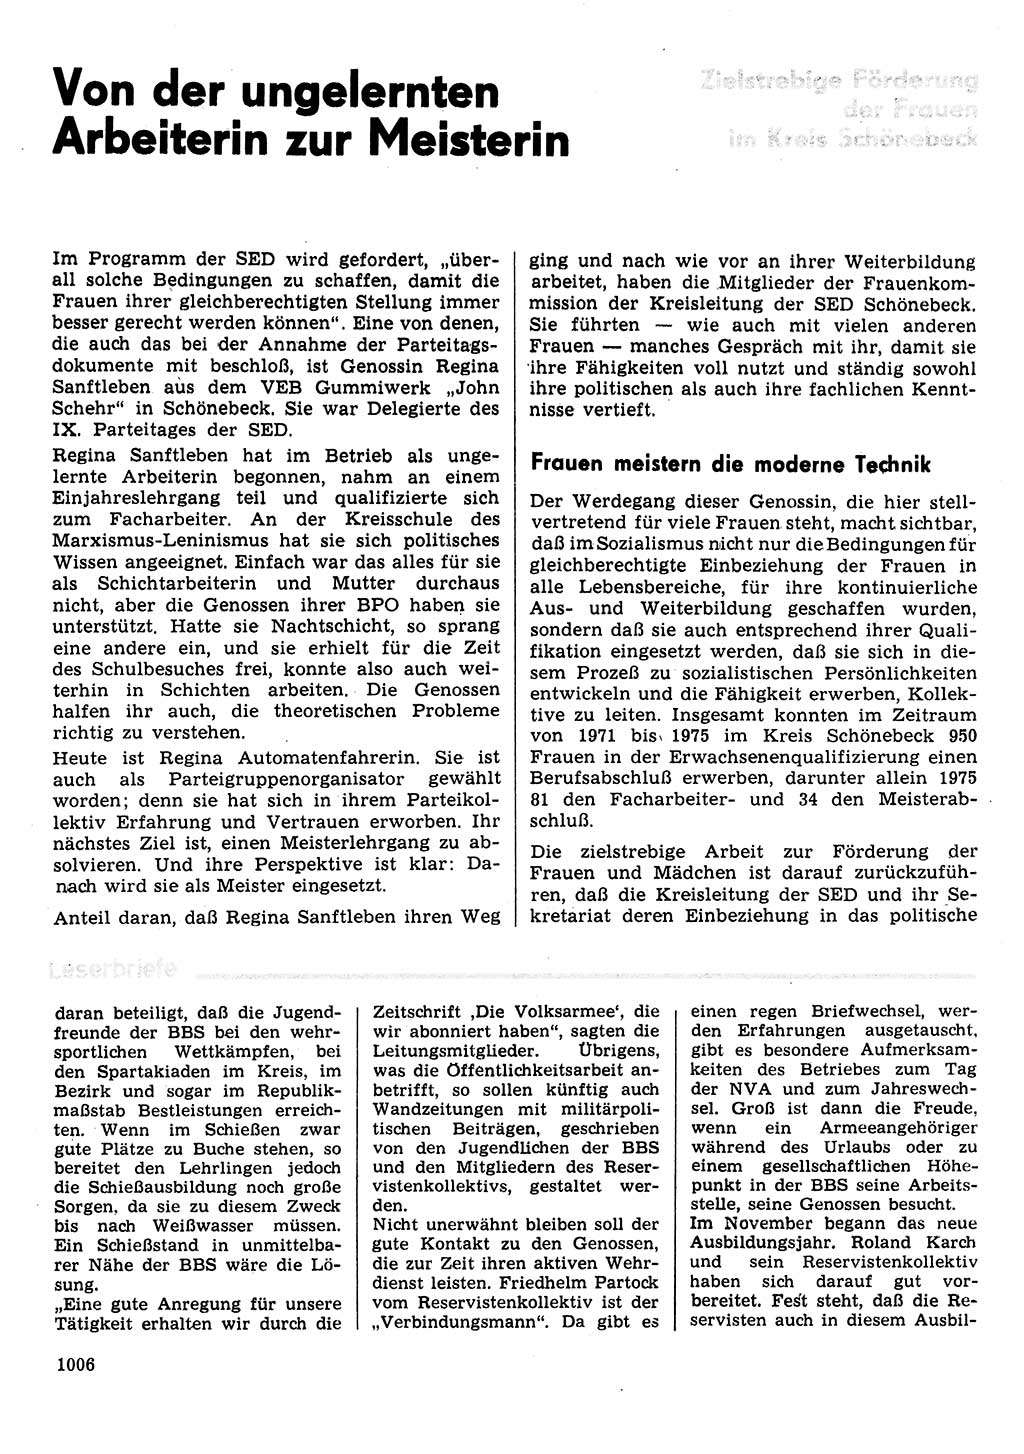 Neuer Weg (NW), Organ des Zentralkomitees (ZK) der SED (Sozialistische Einheitspartei Deutschlands) für Fragen des Parteilebens, 31. Jahrgang [Deutsche Demokratische Republik (DDR)] 1976, Seite 1006 (NW ZK SED DDR 1976, S. 1006)